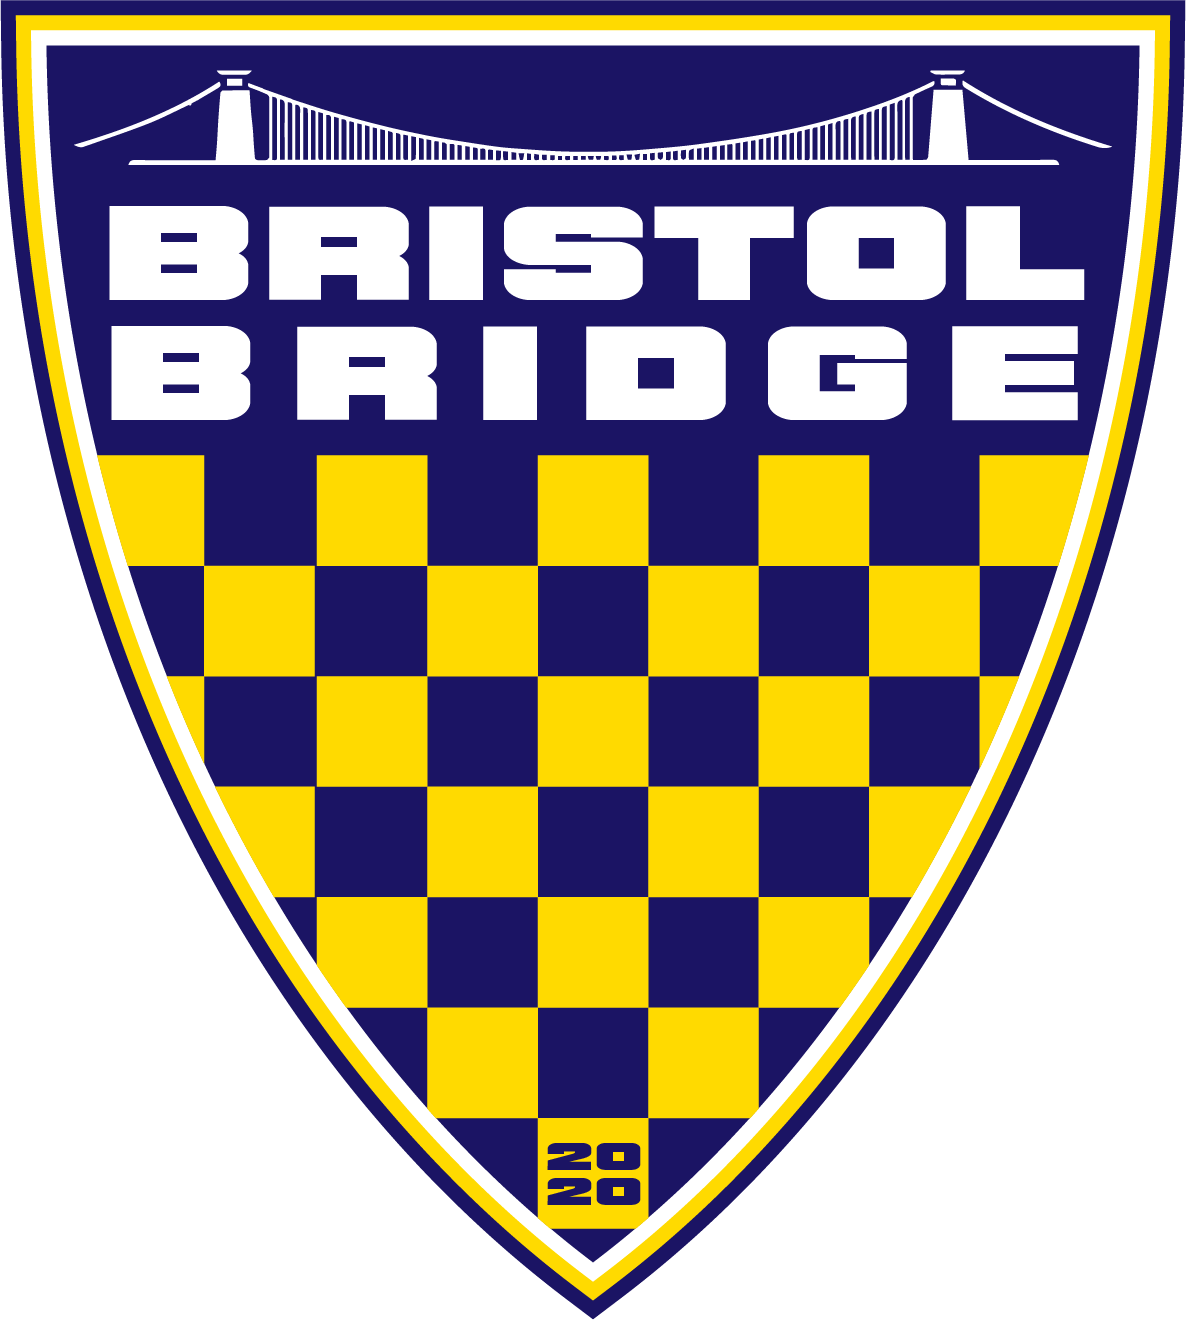 Bristol Bridge Badge